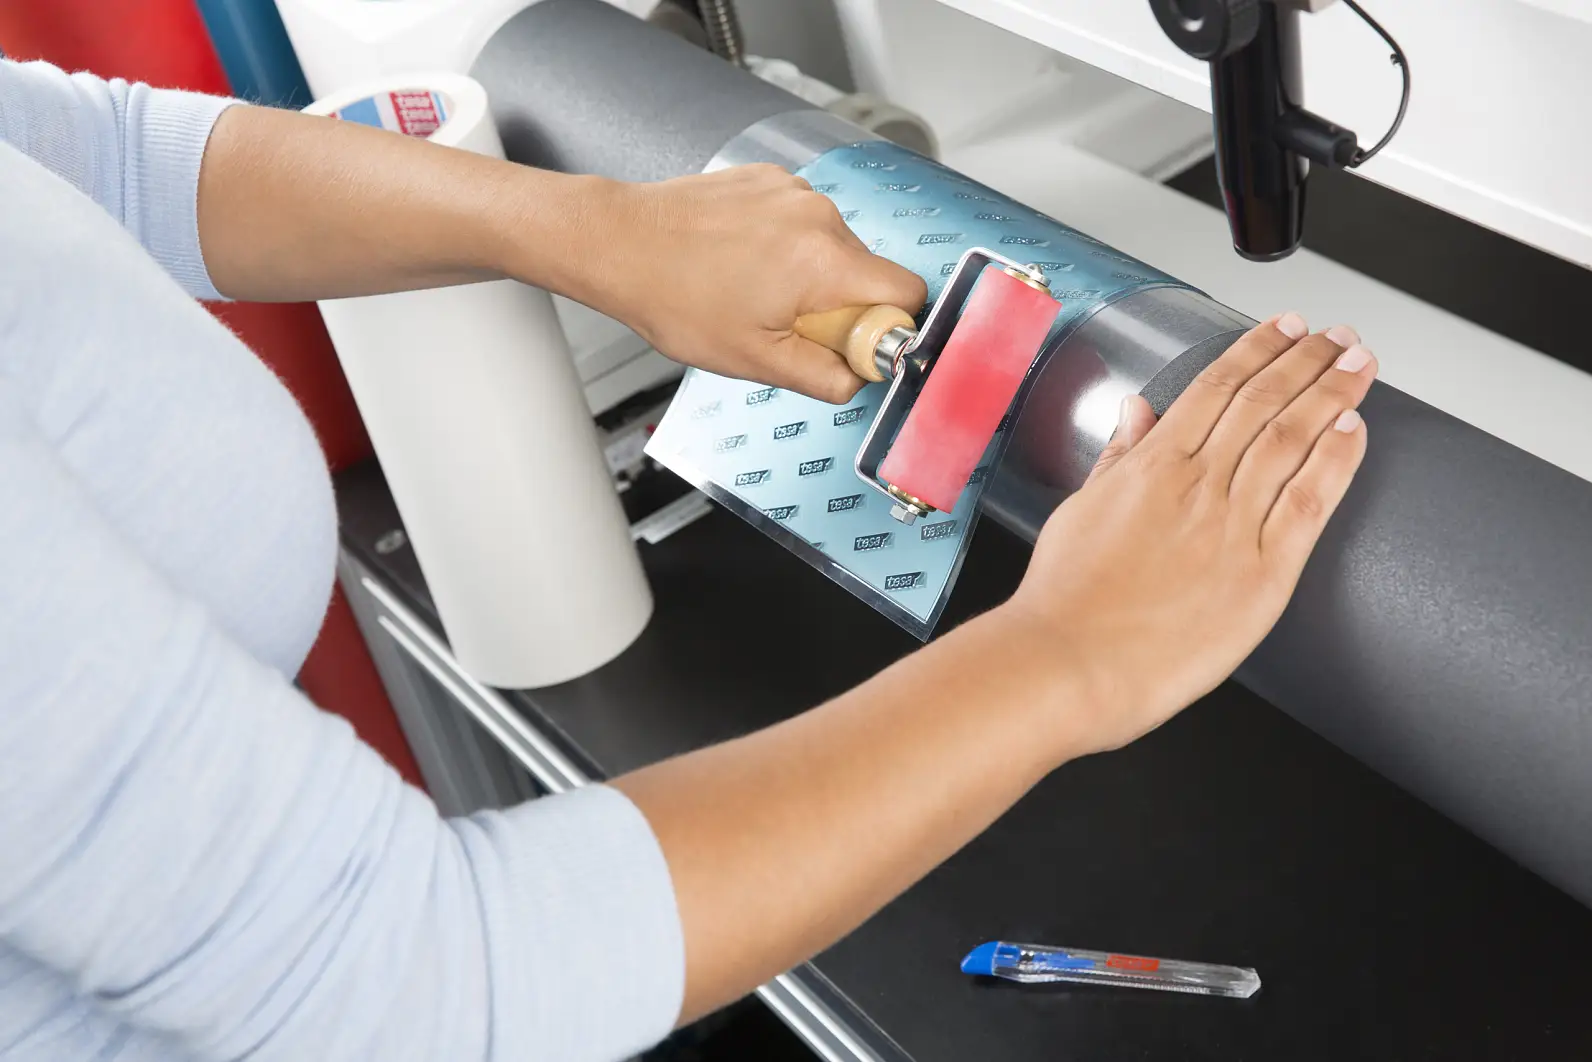 Plāksnes montāža ar gumijas veltnīti uz saspiežamas čaulas — tesaprint®